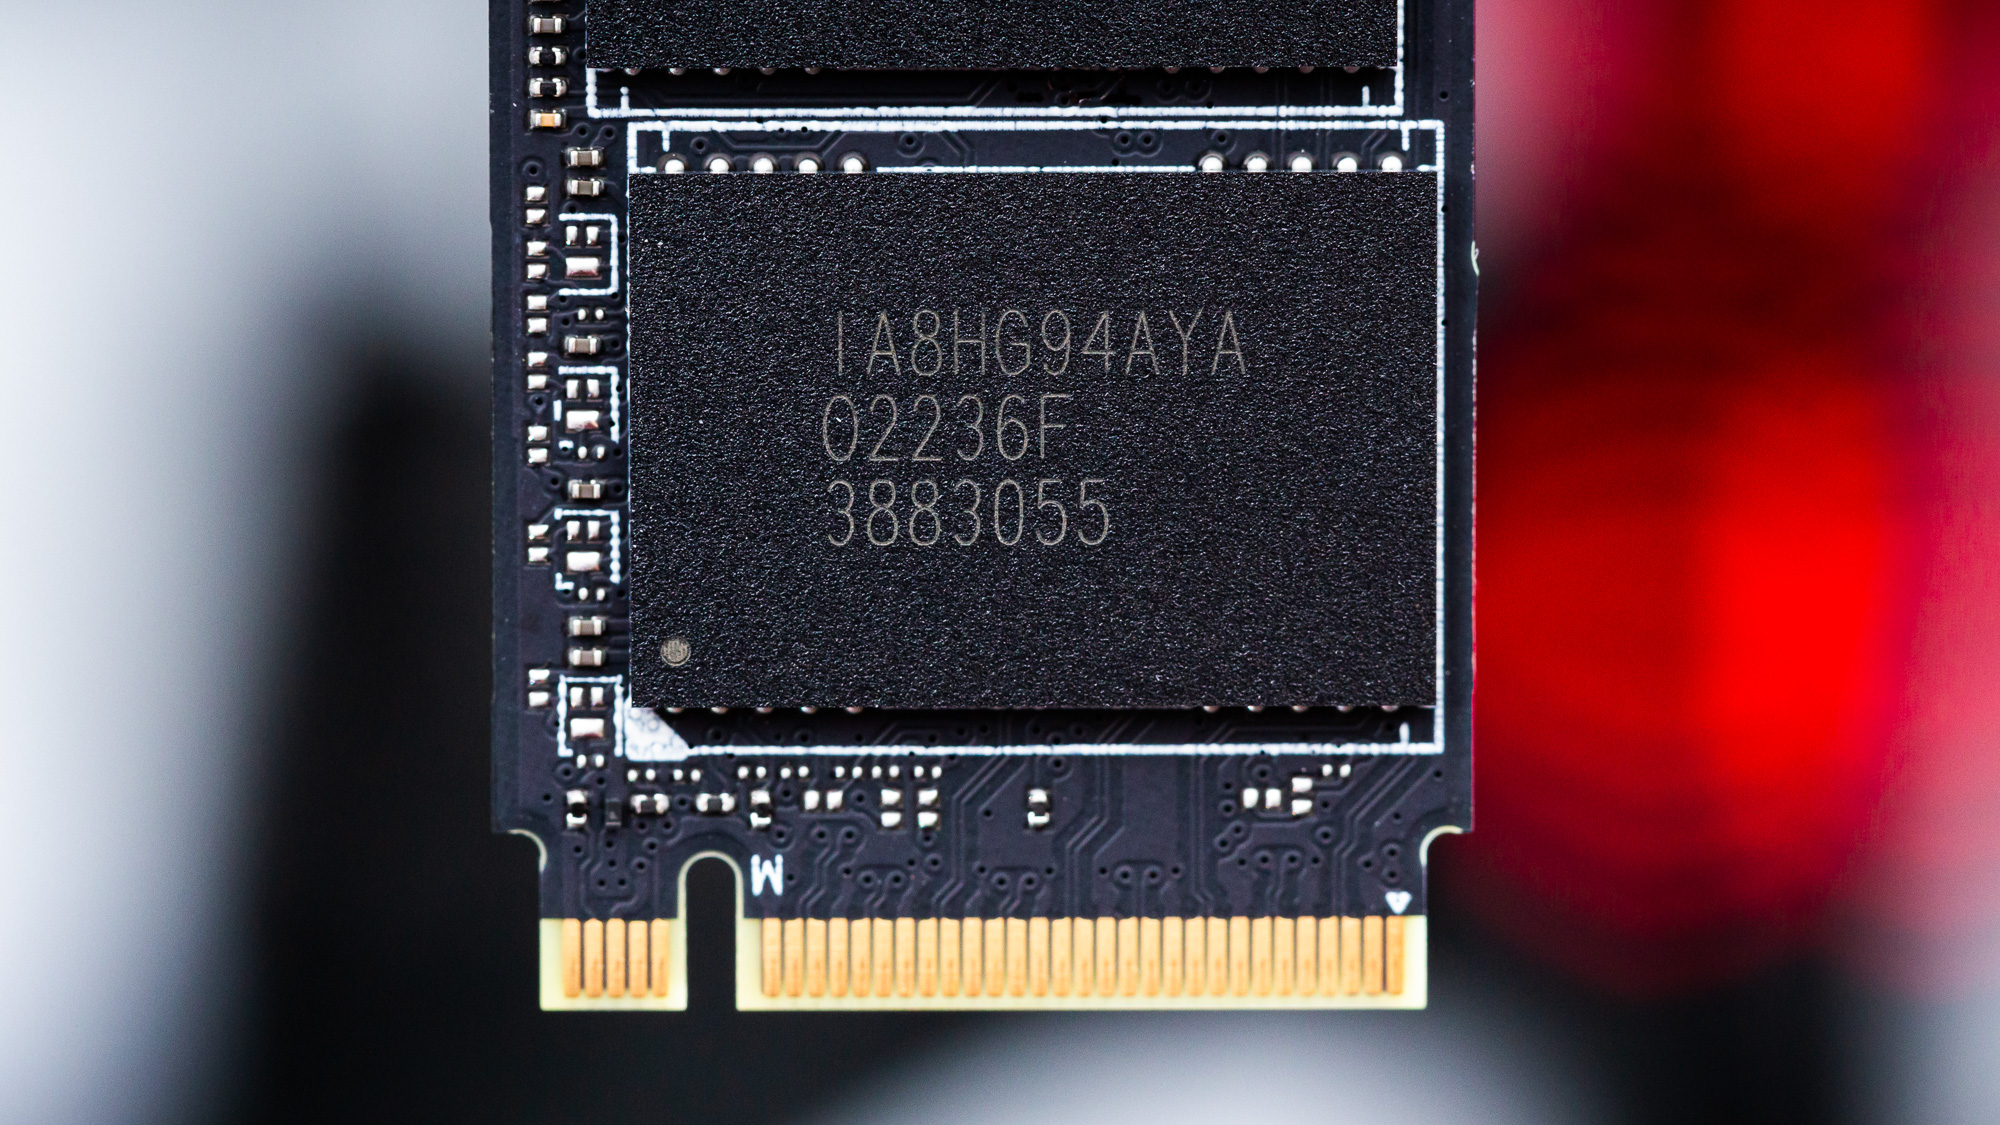 Corsair MP600 GS SSD